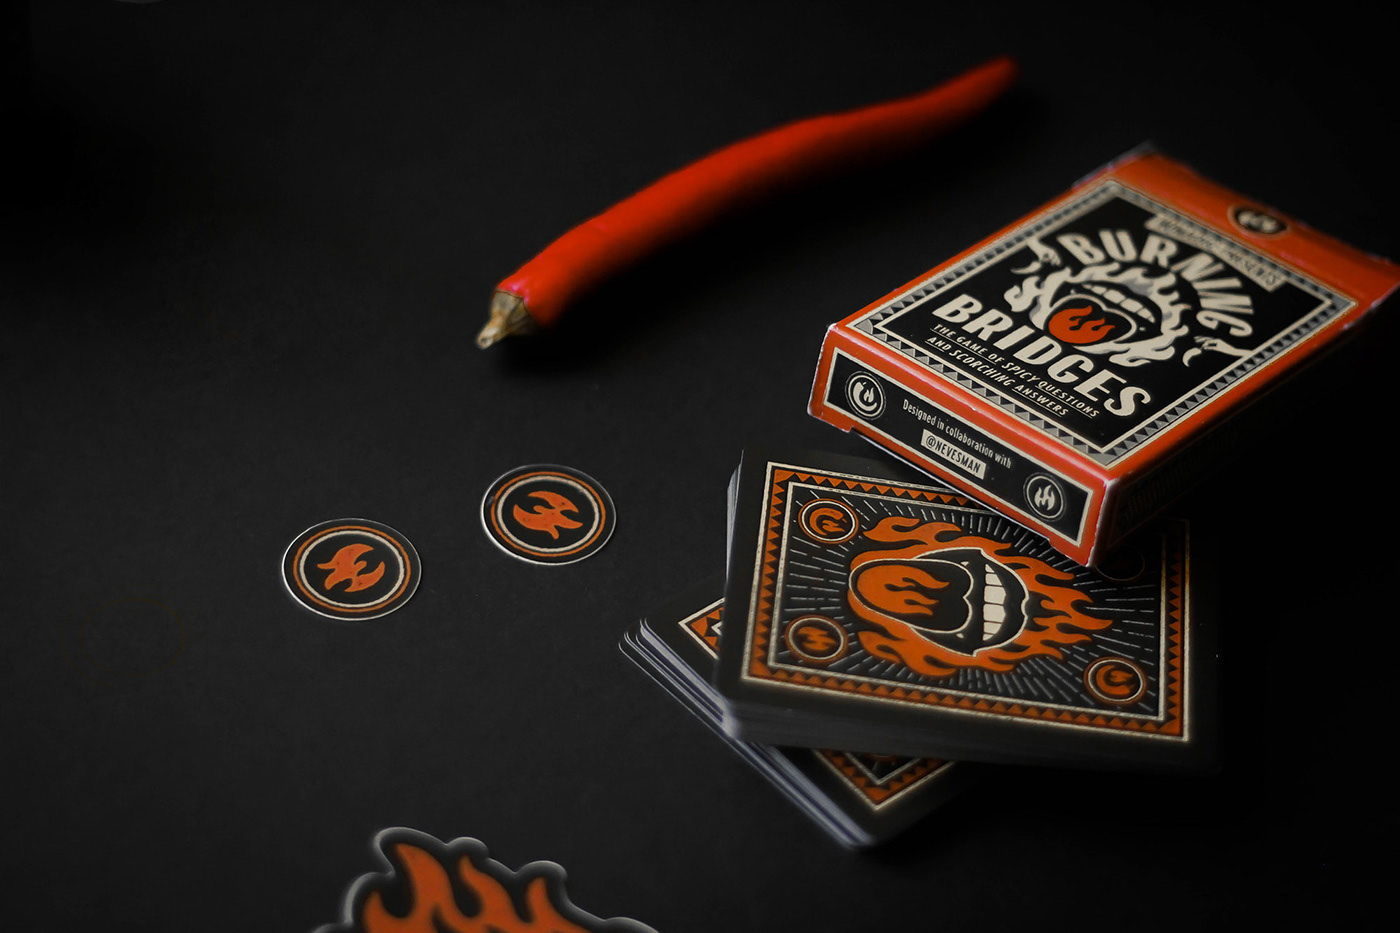 Card Deck card game cards fire Hot hot sauce Matchbook Matchbox pepper Playing Cards